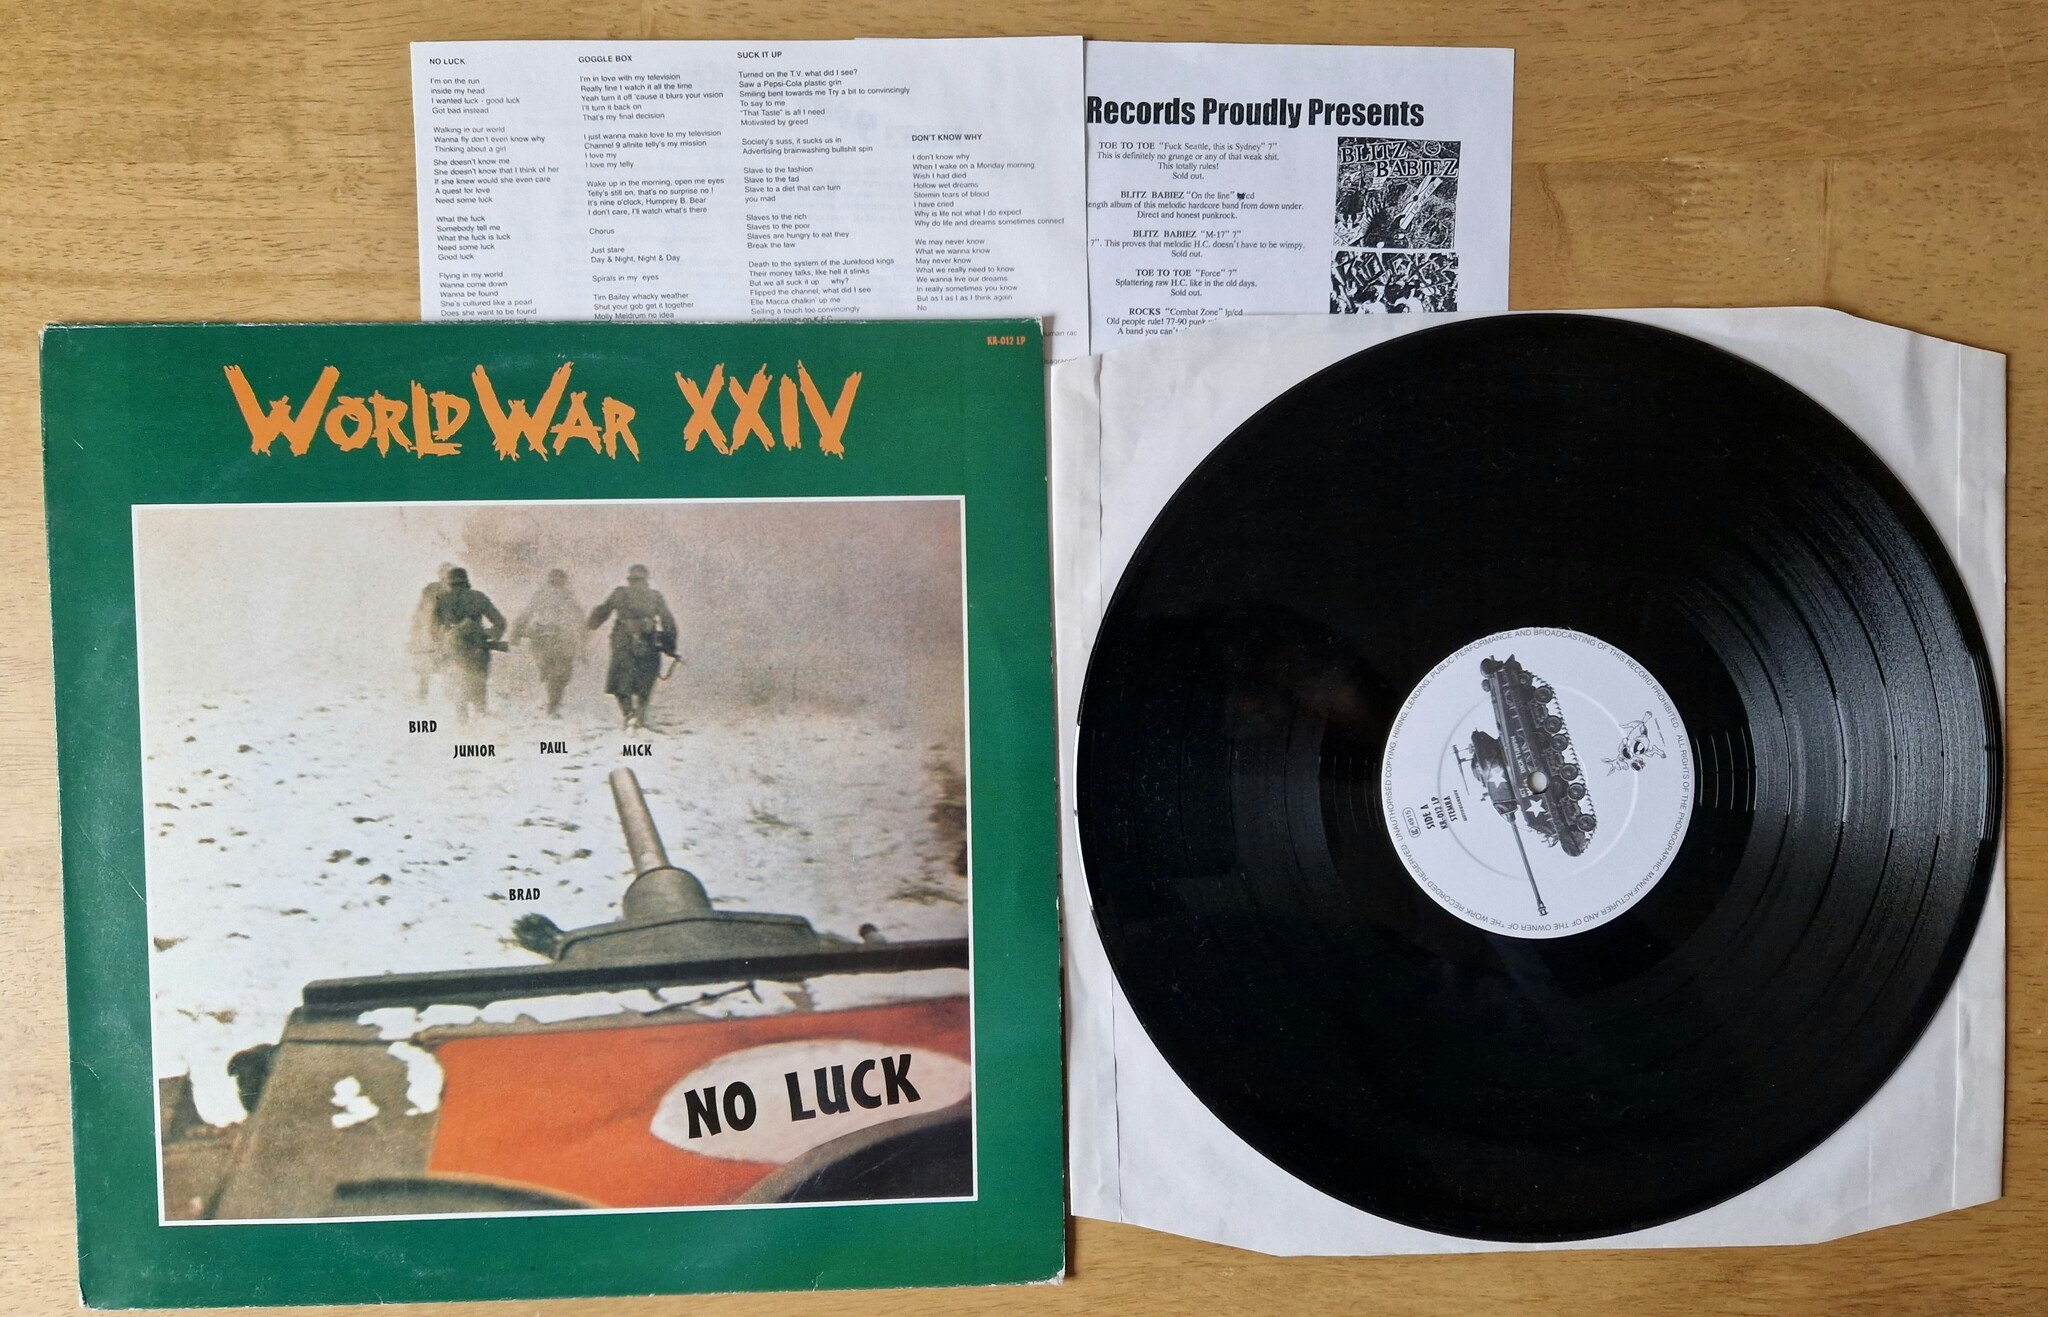 World War XXIV, No luck. Vinyl LP